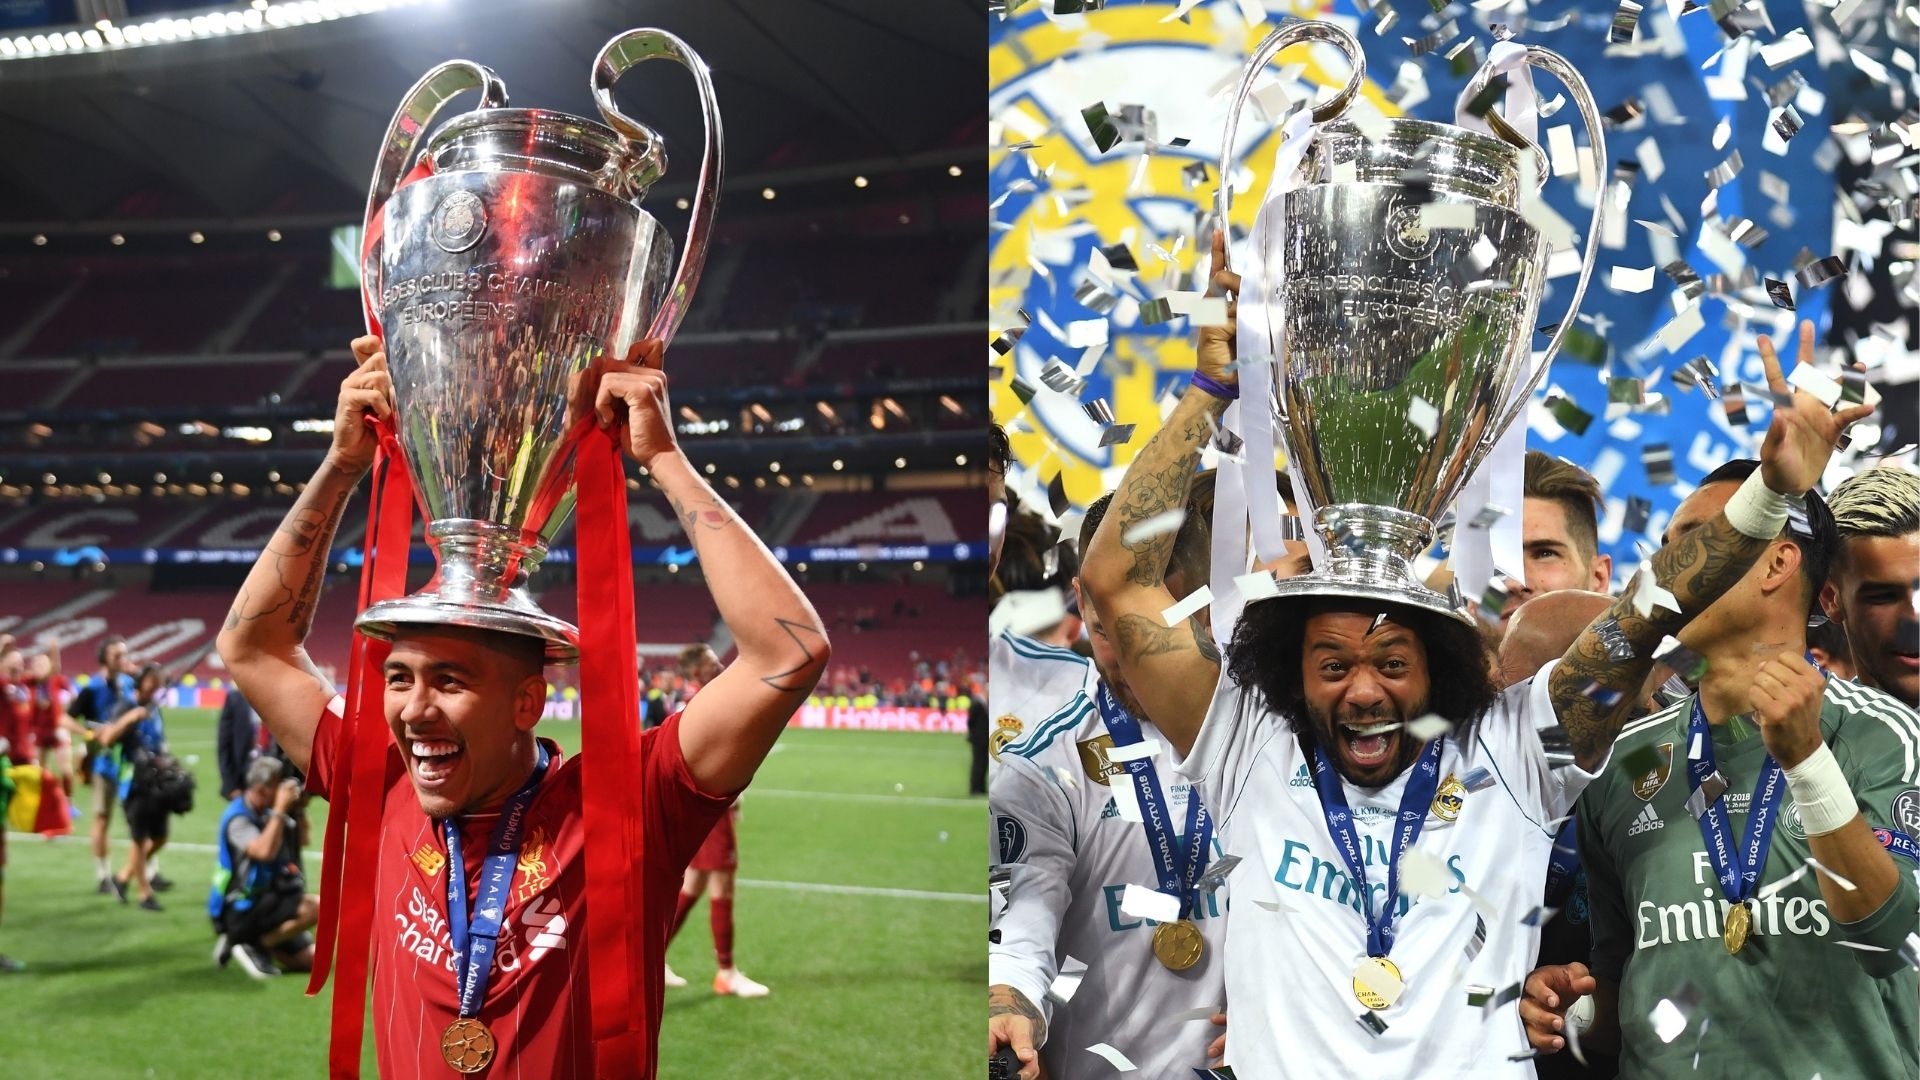 Os esquecidos vencedores da Champions League que se tornaram